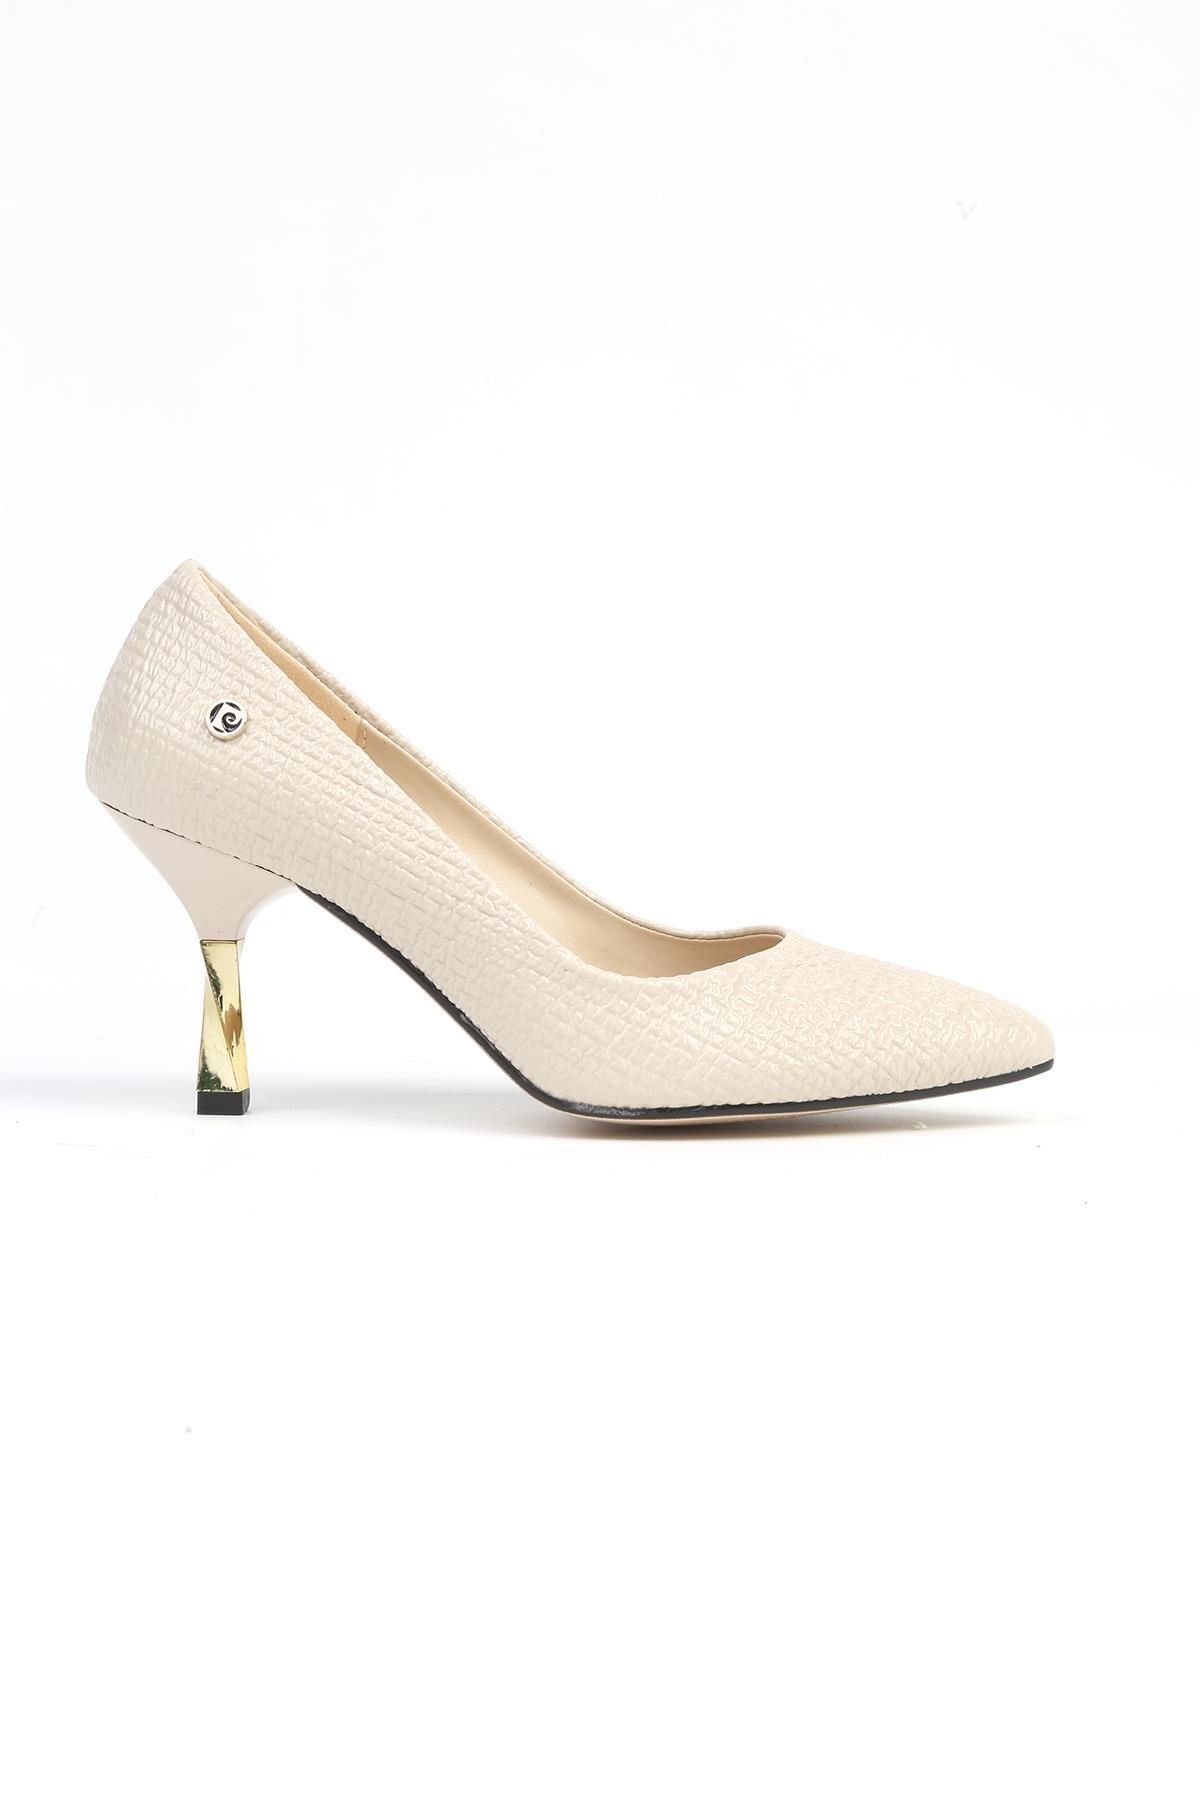 Pierre Cardin ® | PC-52571 - 3478 Bej Desen - Kadın Topuklu Ayakkabı